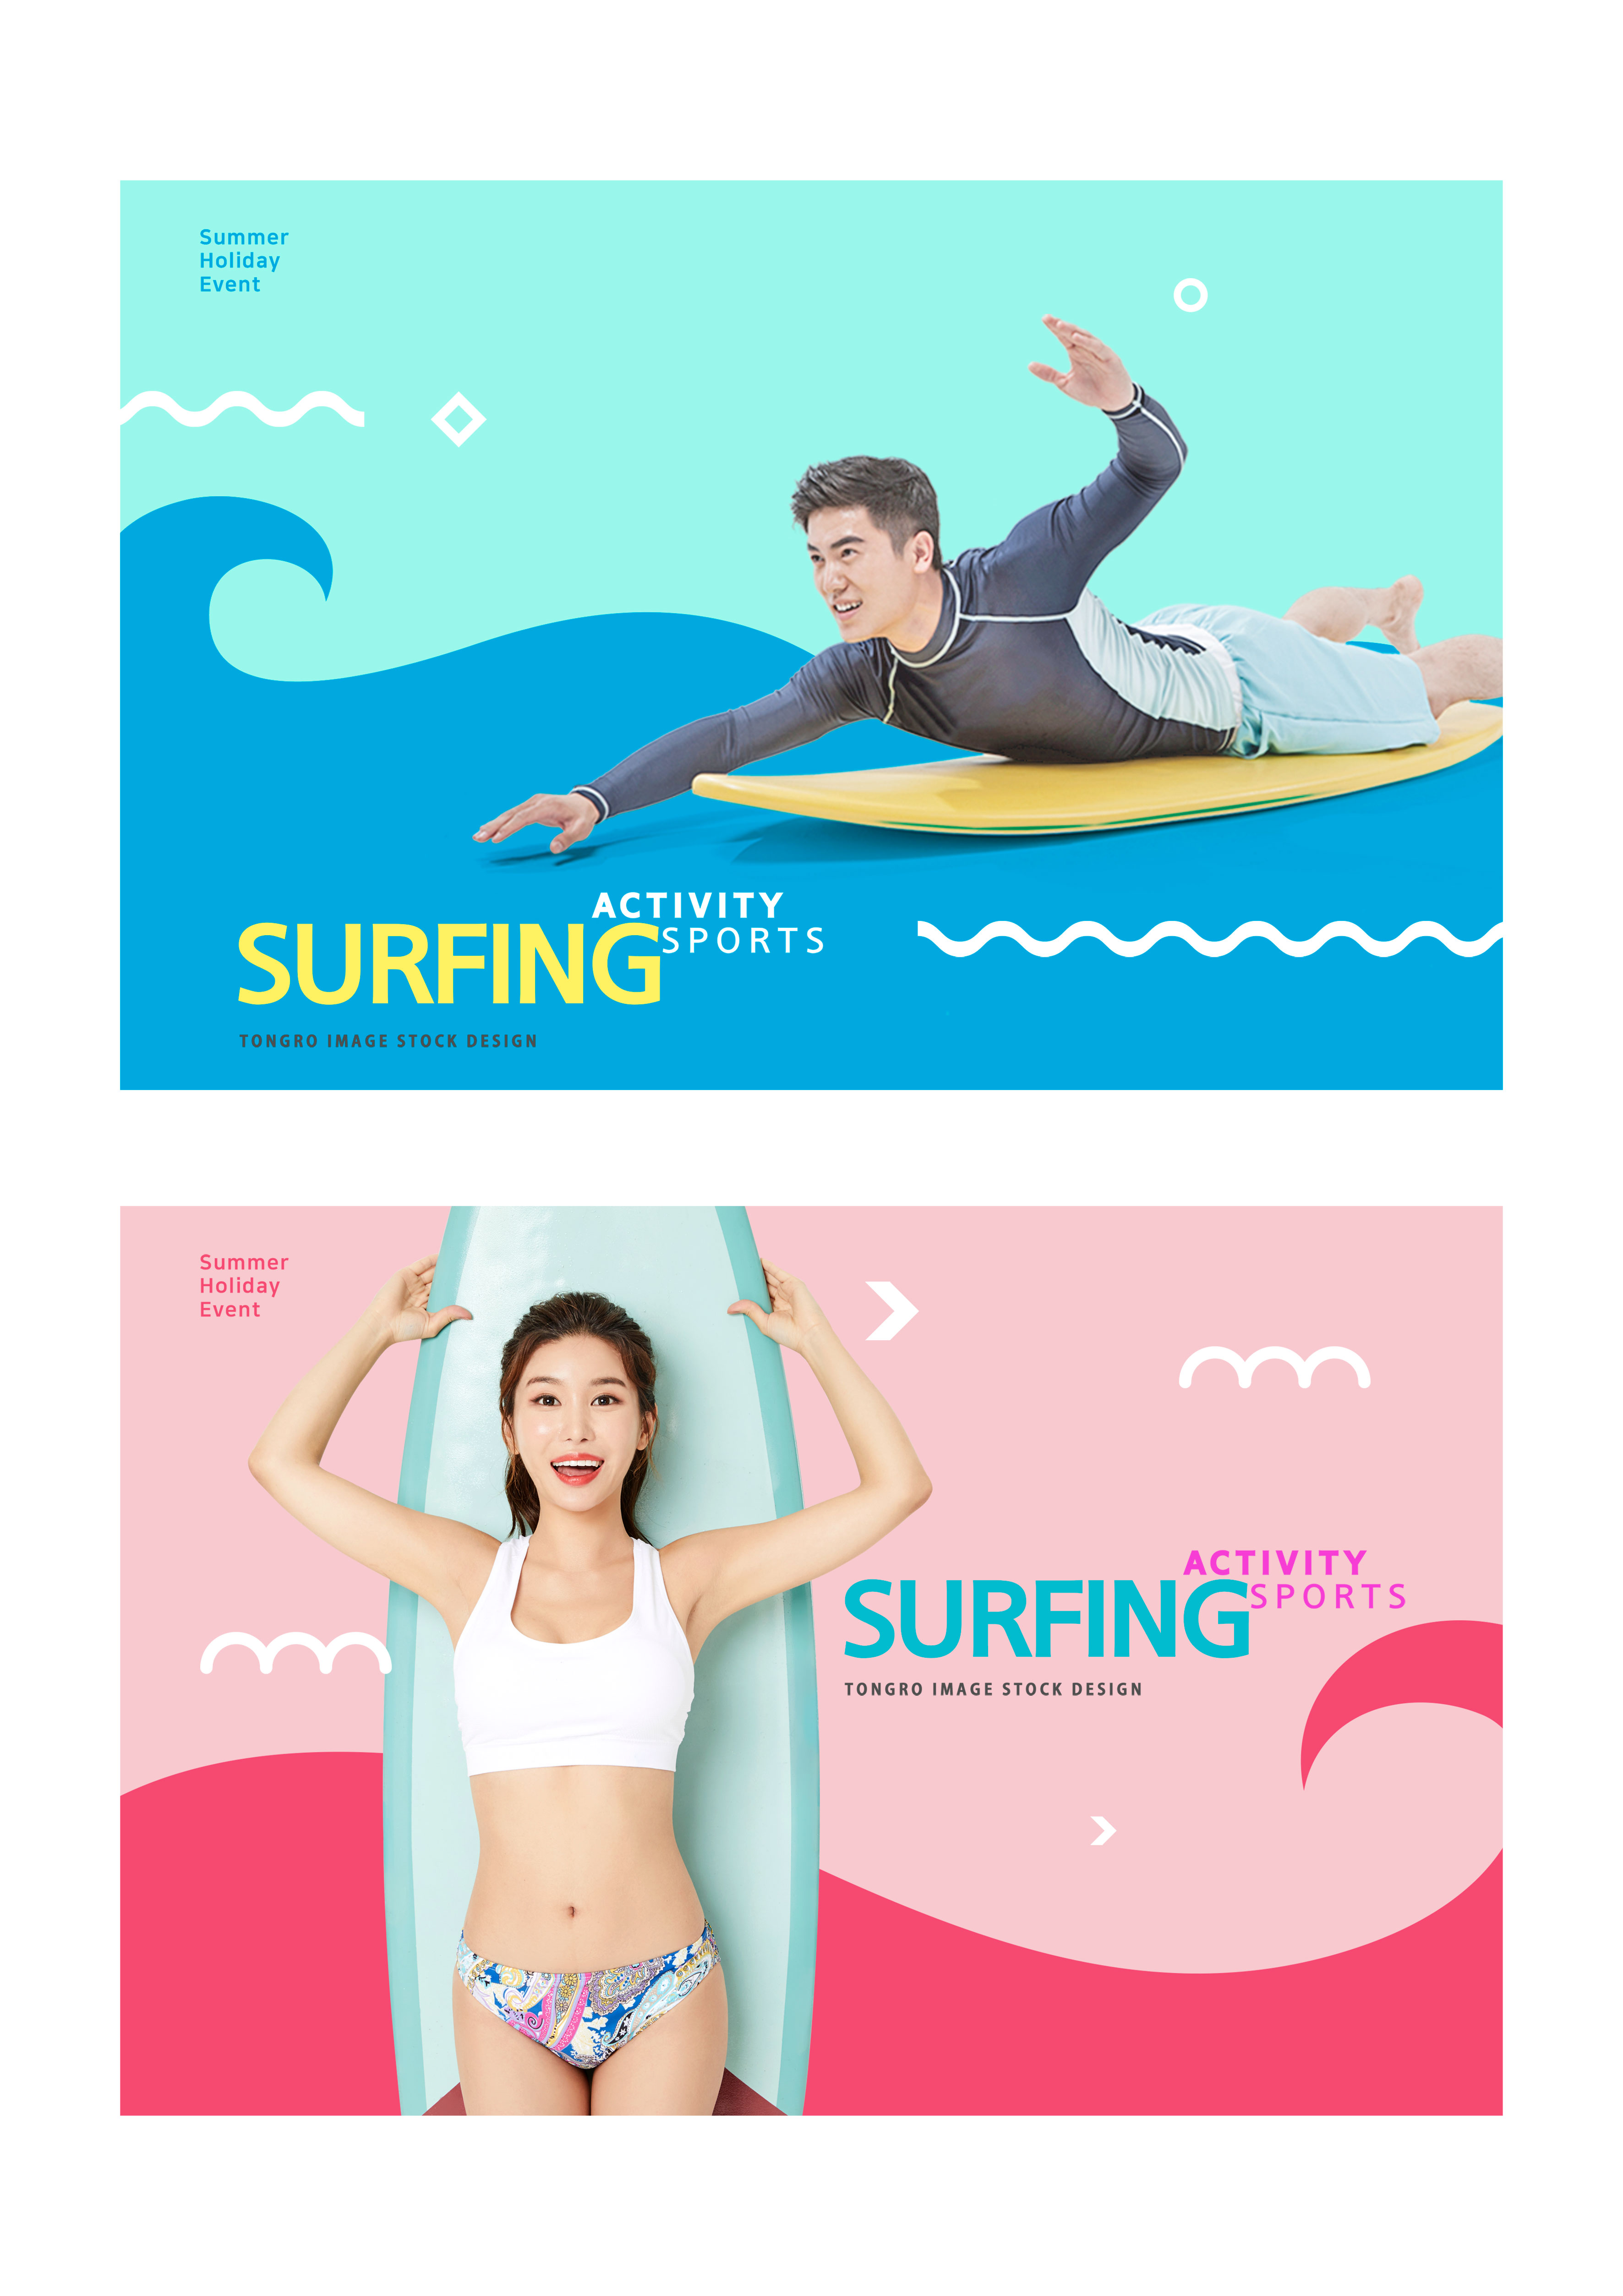 夏季冲浪活动宣传广告Banner/海报设计模板插图